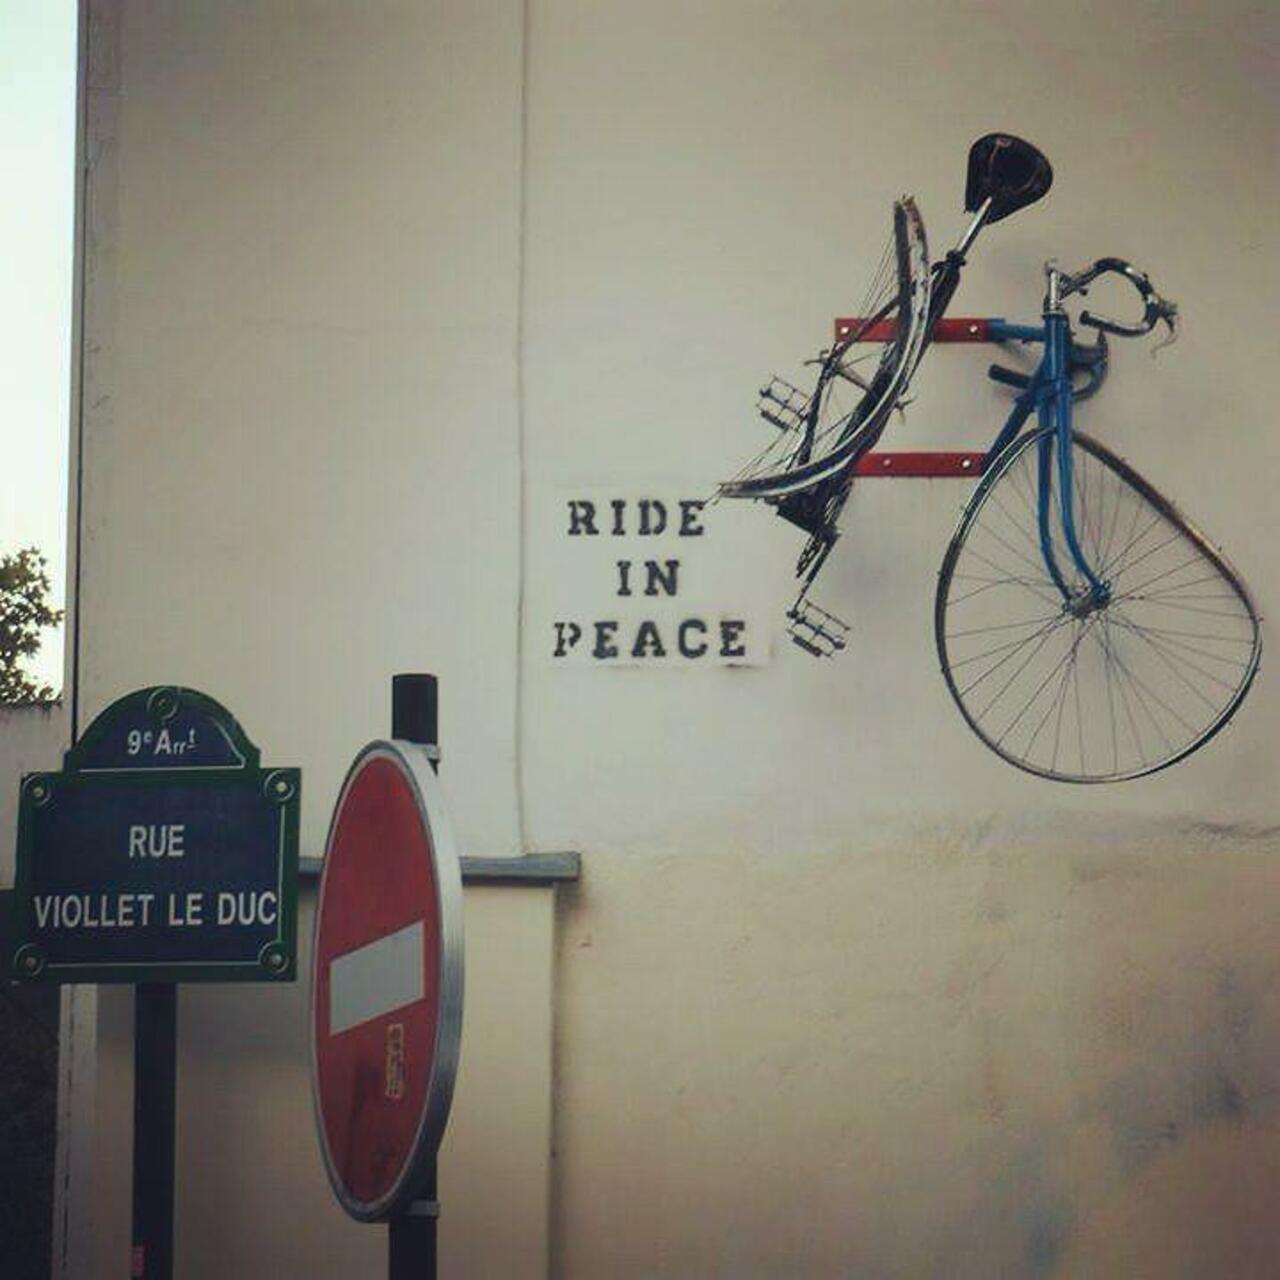 RT @circumjacent_fr: #Paris #graffiti photo by @aurelie_a_paris http://ift.tt/1OrBNME #StreetArt http://t.co/CpxeN9ftZZ